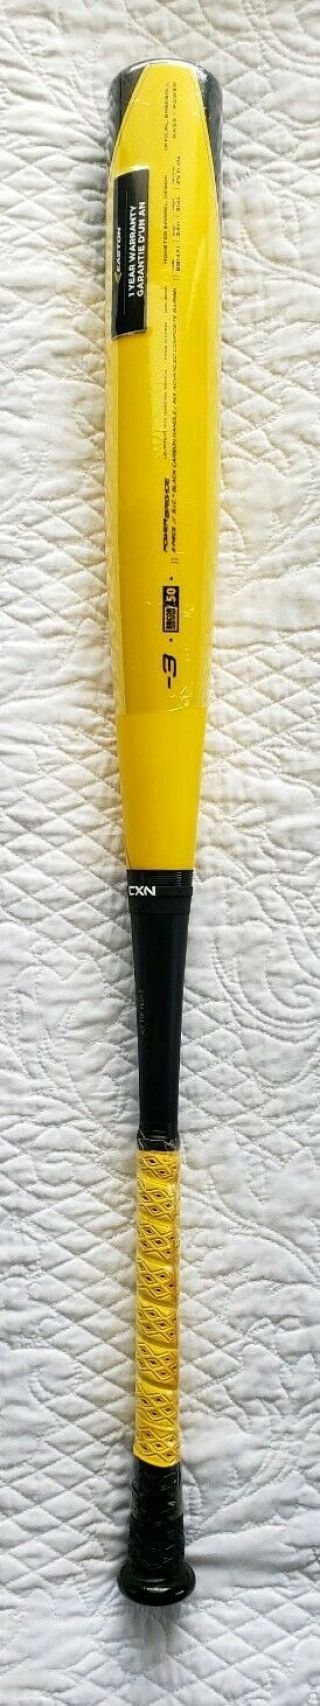 & Rare Easton Xl1 Bb14x1 34 " /31 Oz.  (- 3) Bbcor Baseball Bat